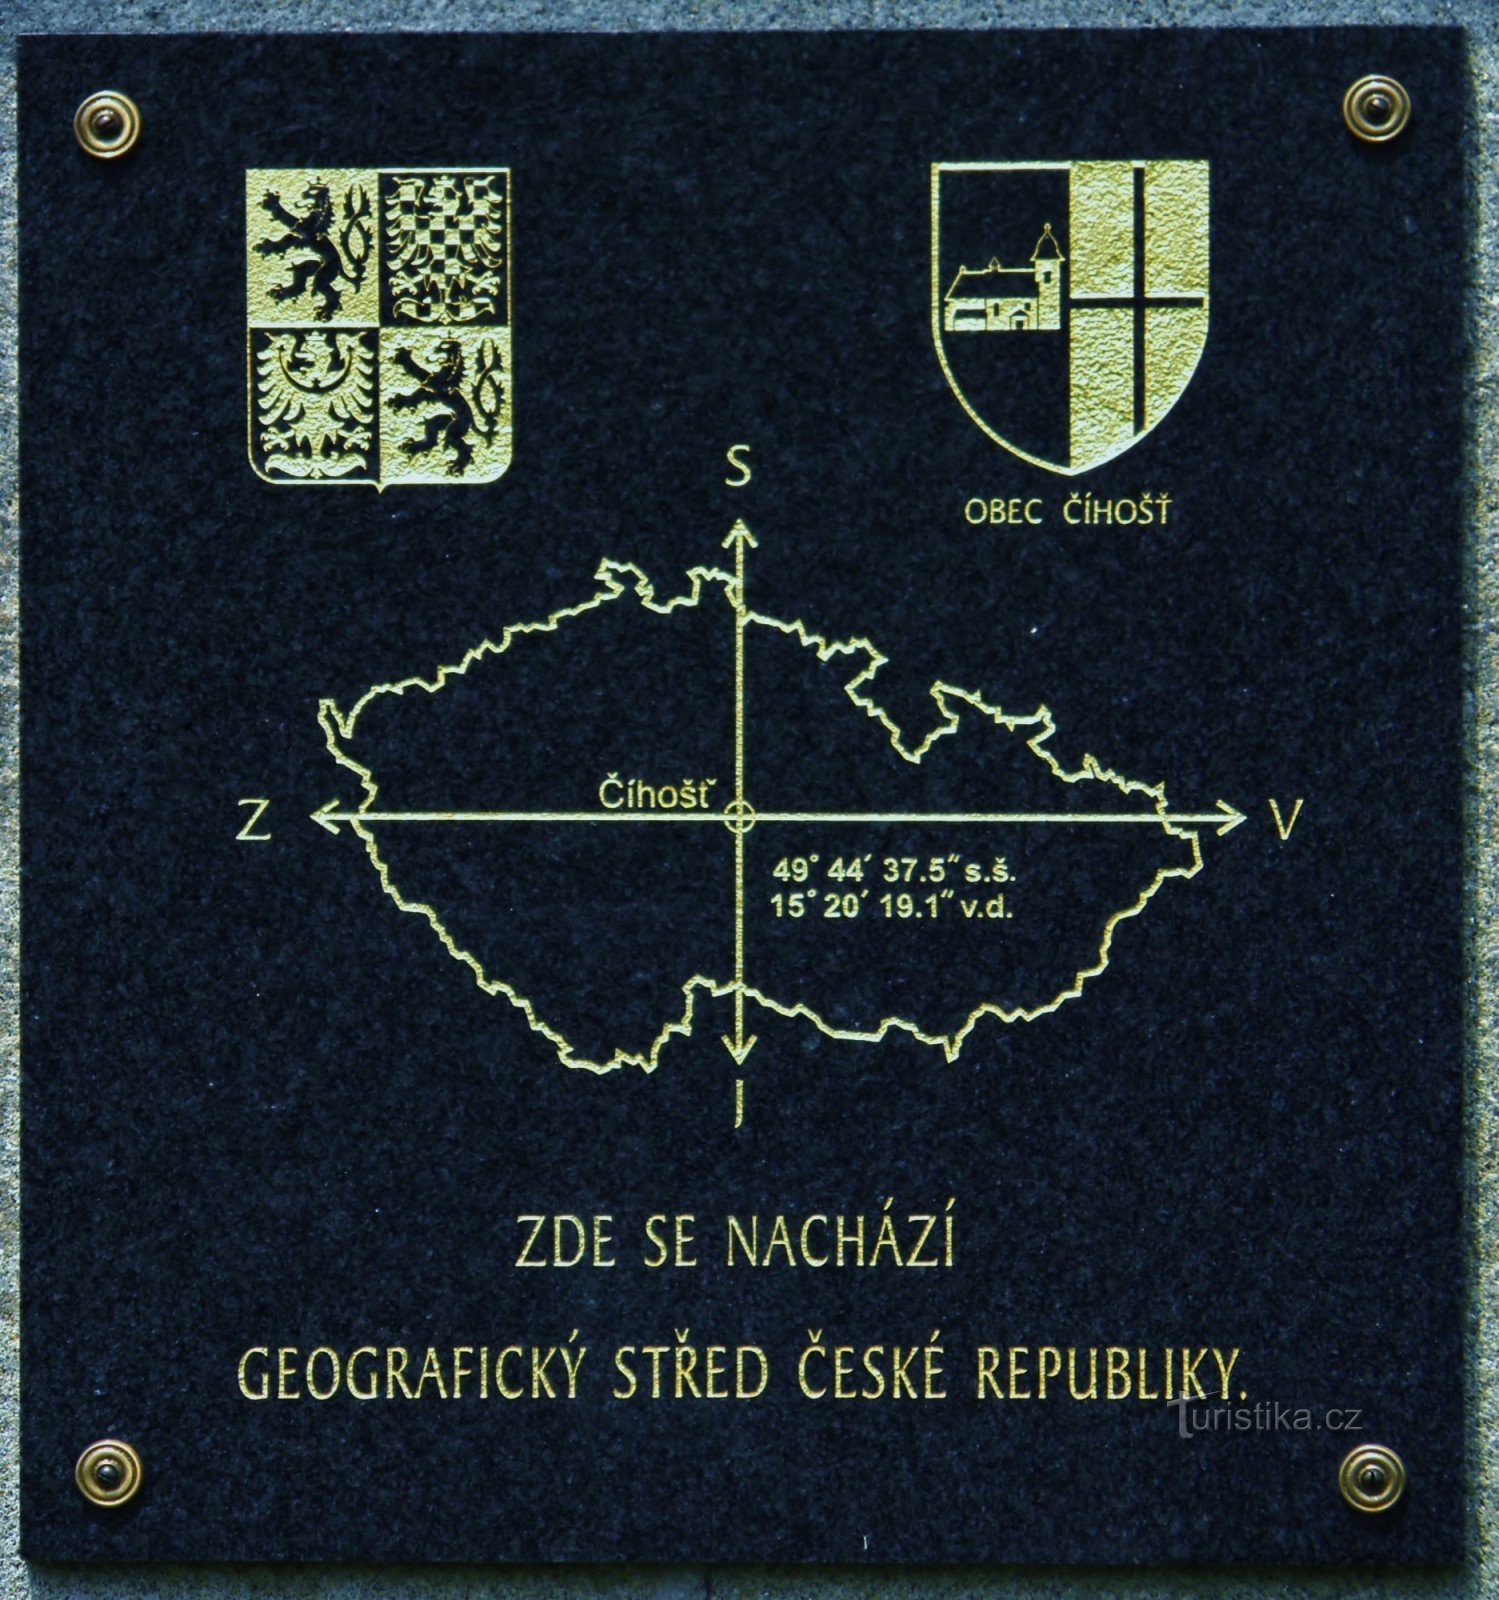 Informationstafel auf einem Steindenkmal im geografischen Zentrum der Tschechischen Republik.